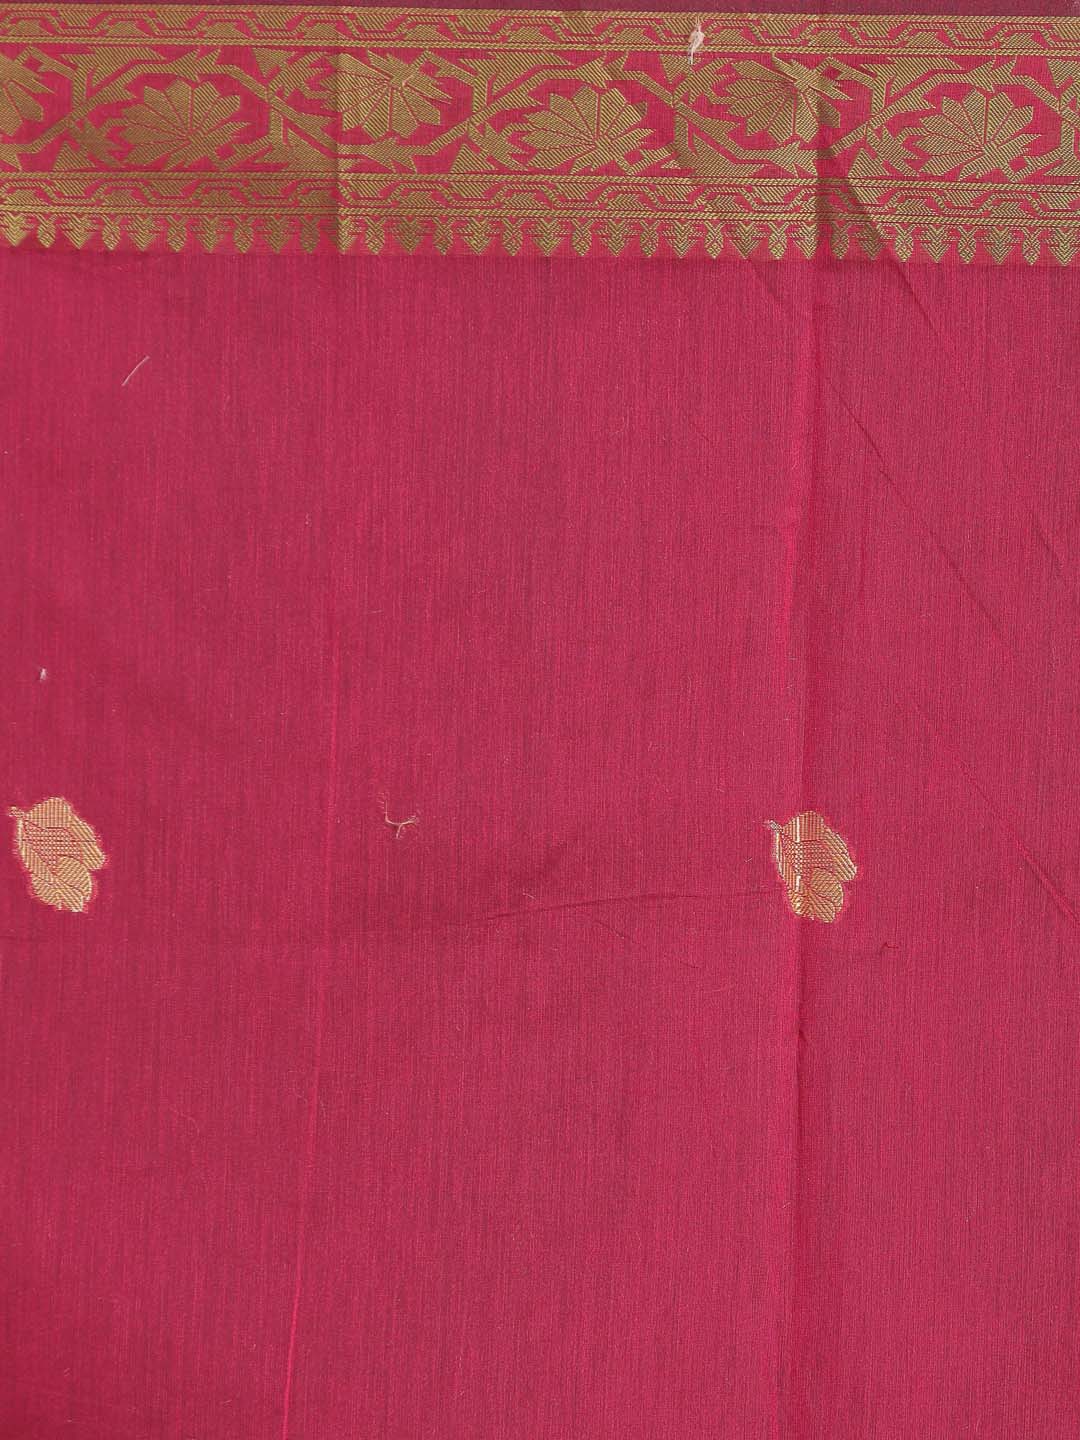 Indethnic Banarasi Magenta Woven Design Festive Wear Saree - Saree Detail View